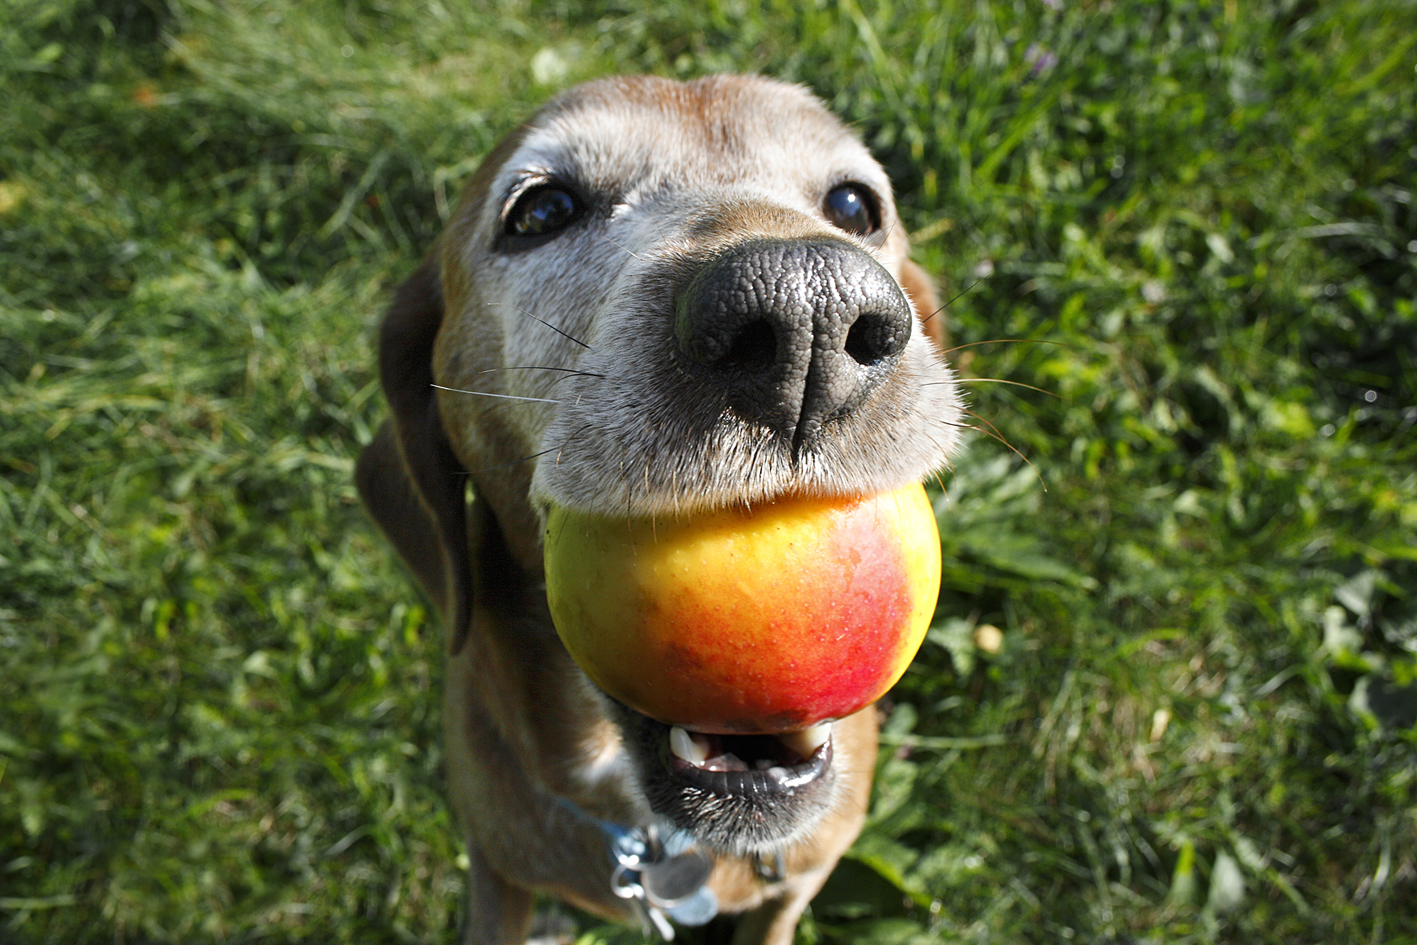 柿子,桃子和李子的种子或核会损害狗狗的小肠,也可能堵住它们的肠子